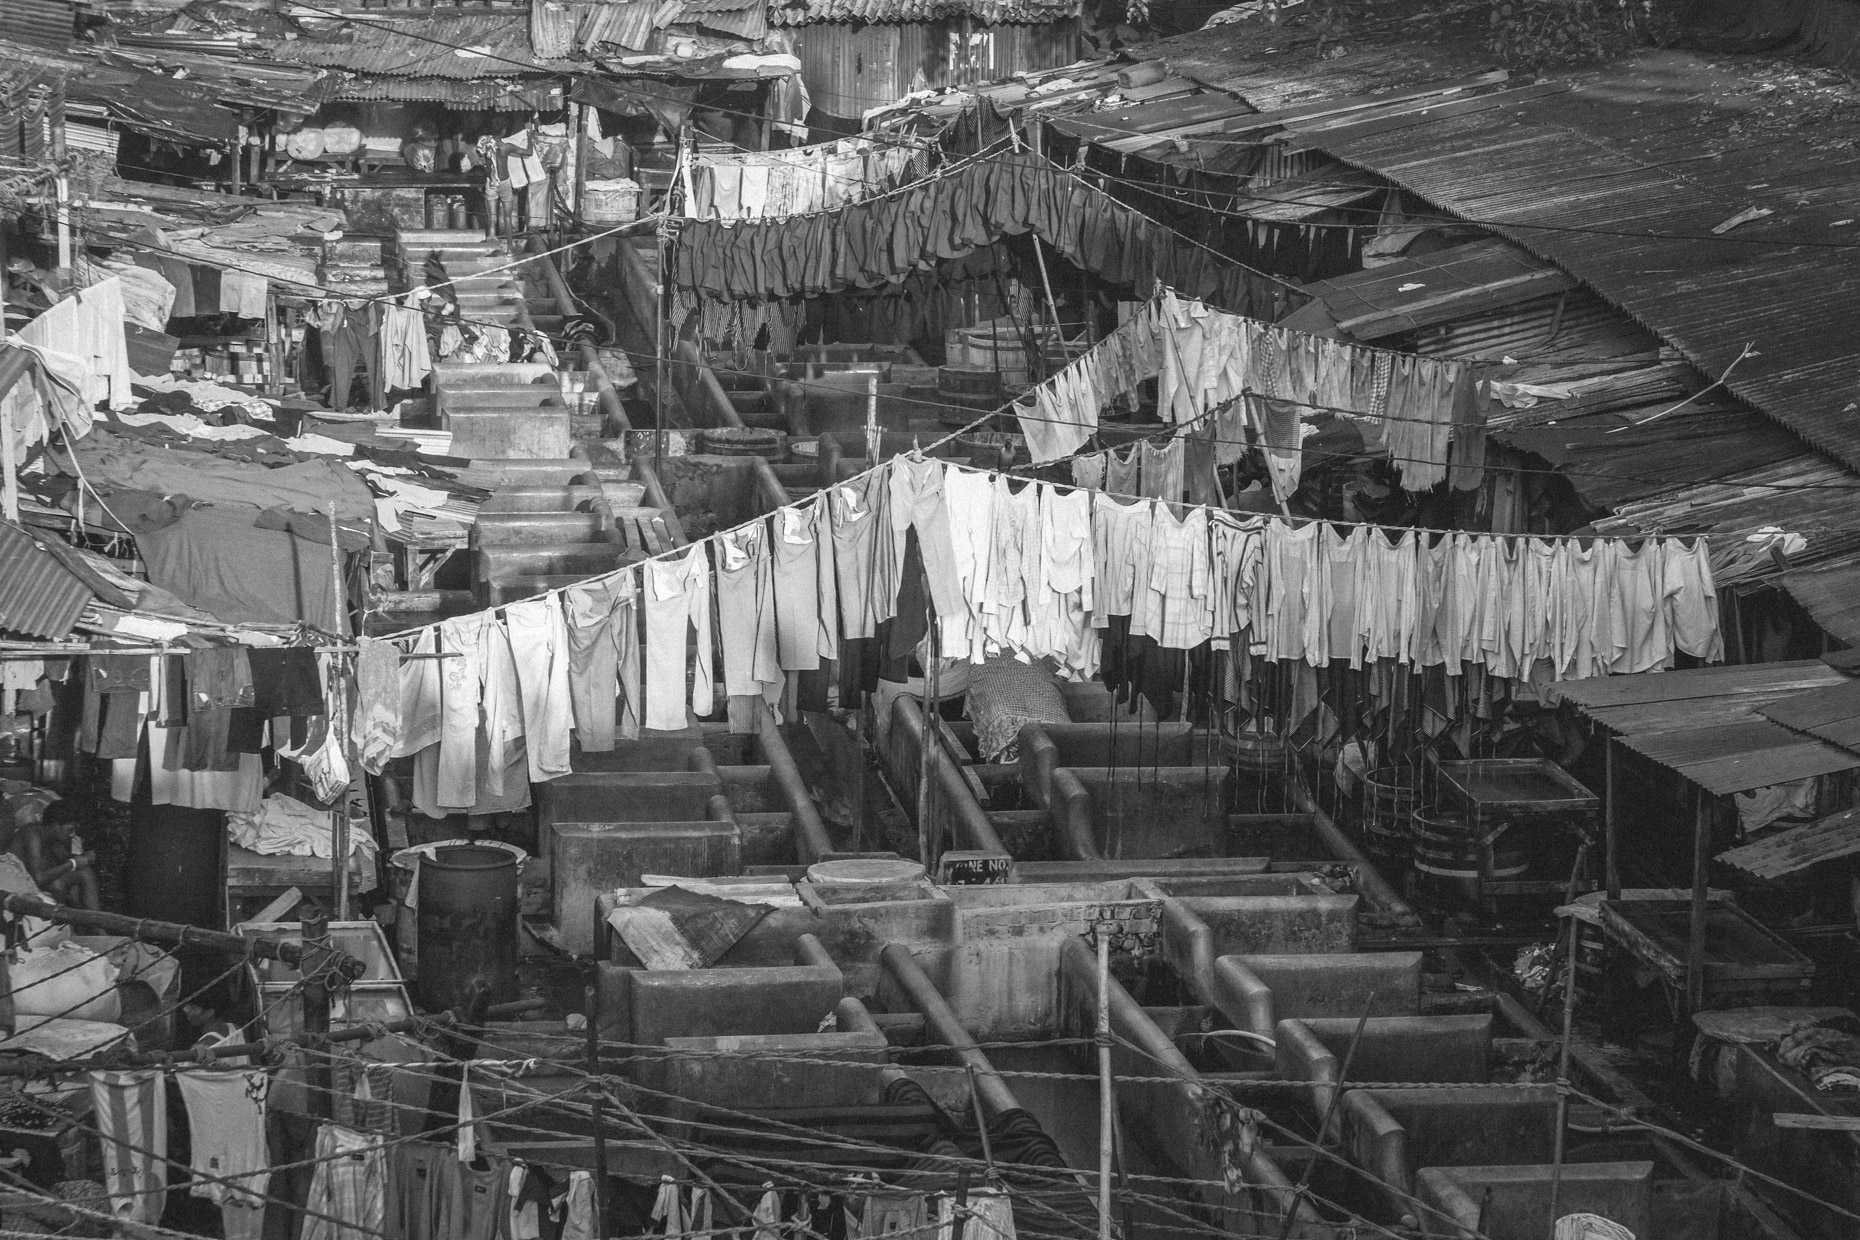 Rows of laundry hanging in slum in Mumbai